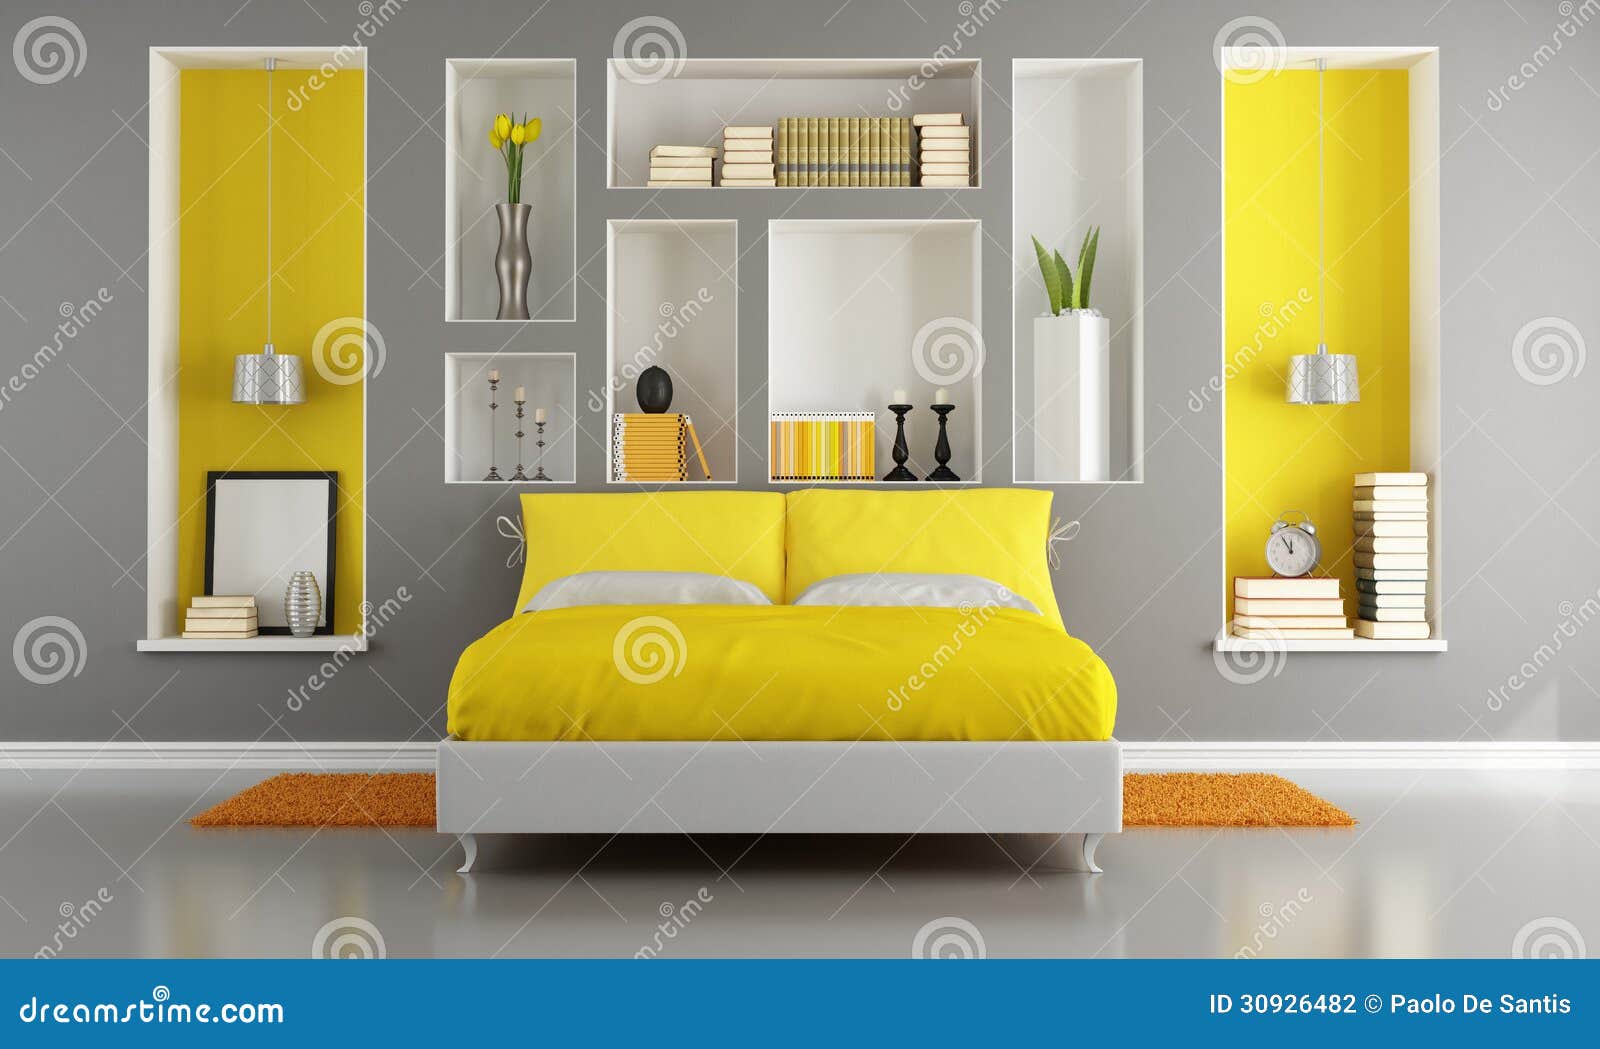 Dormitorio Moderno Amarillo Y Gris Fotografía de archivo - Imagen: 30926482